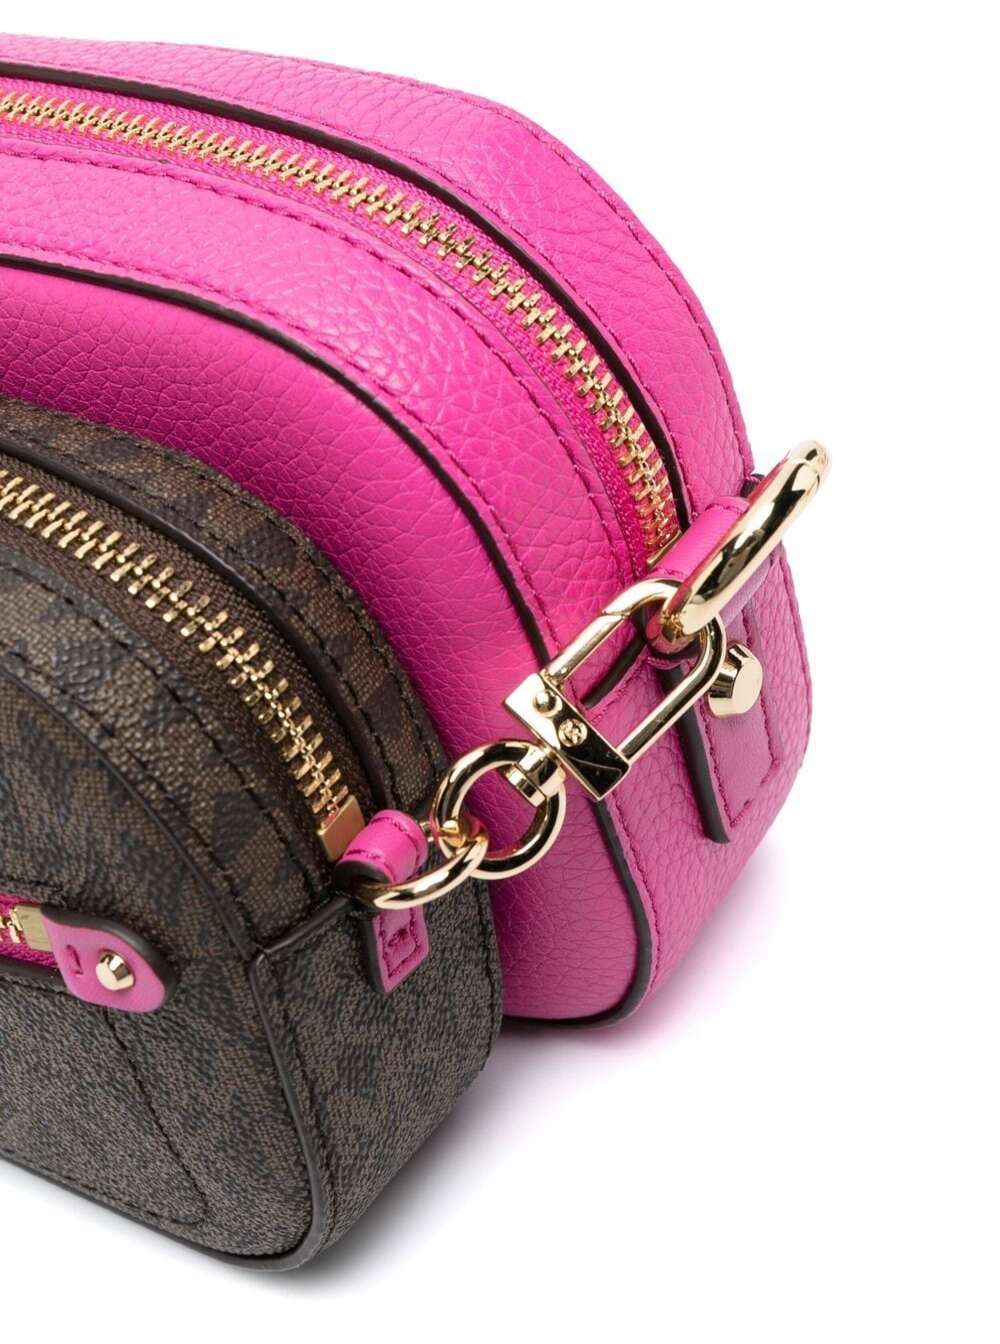 Small Fuchsia Coach purse  Coach purses, Purses, Purses michael kors